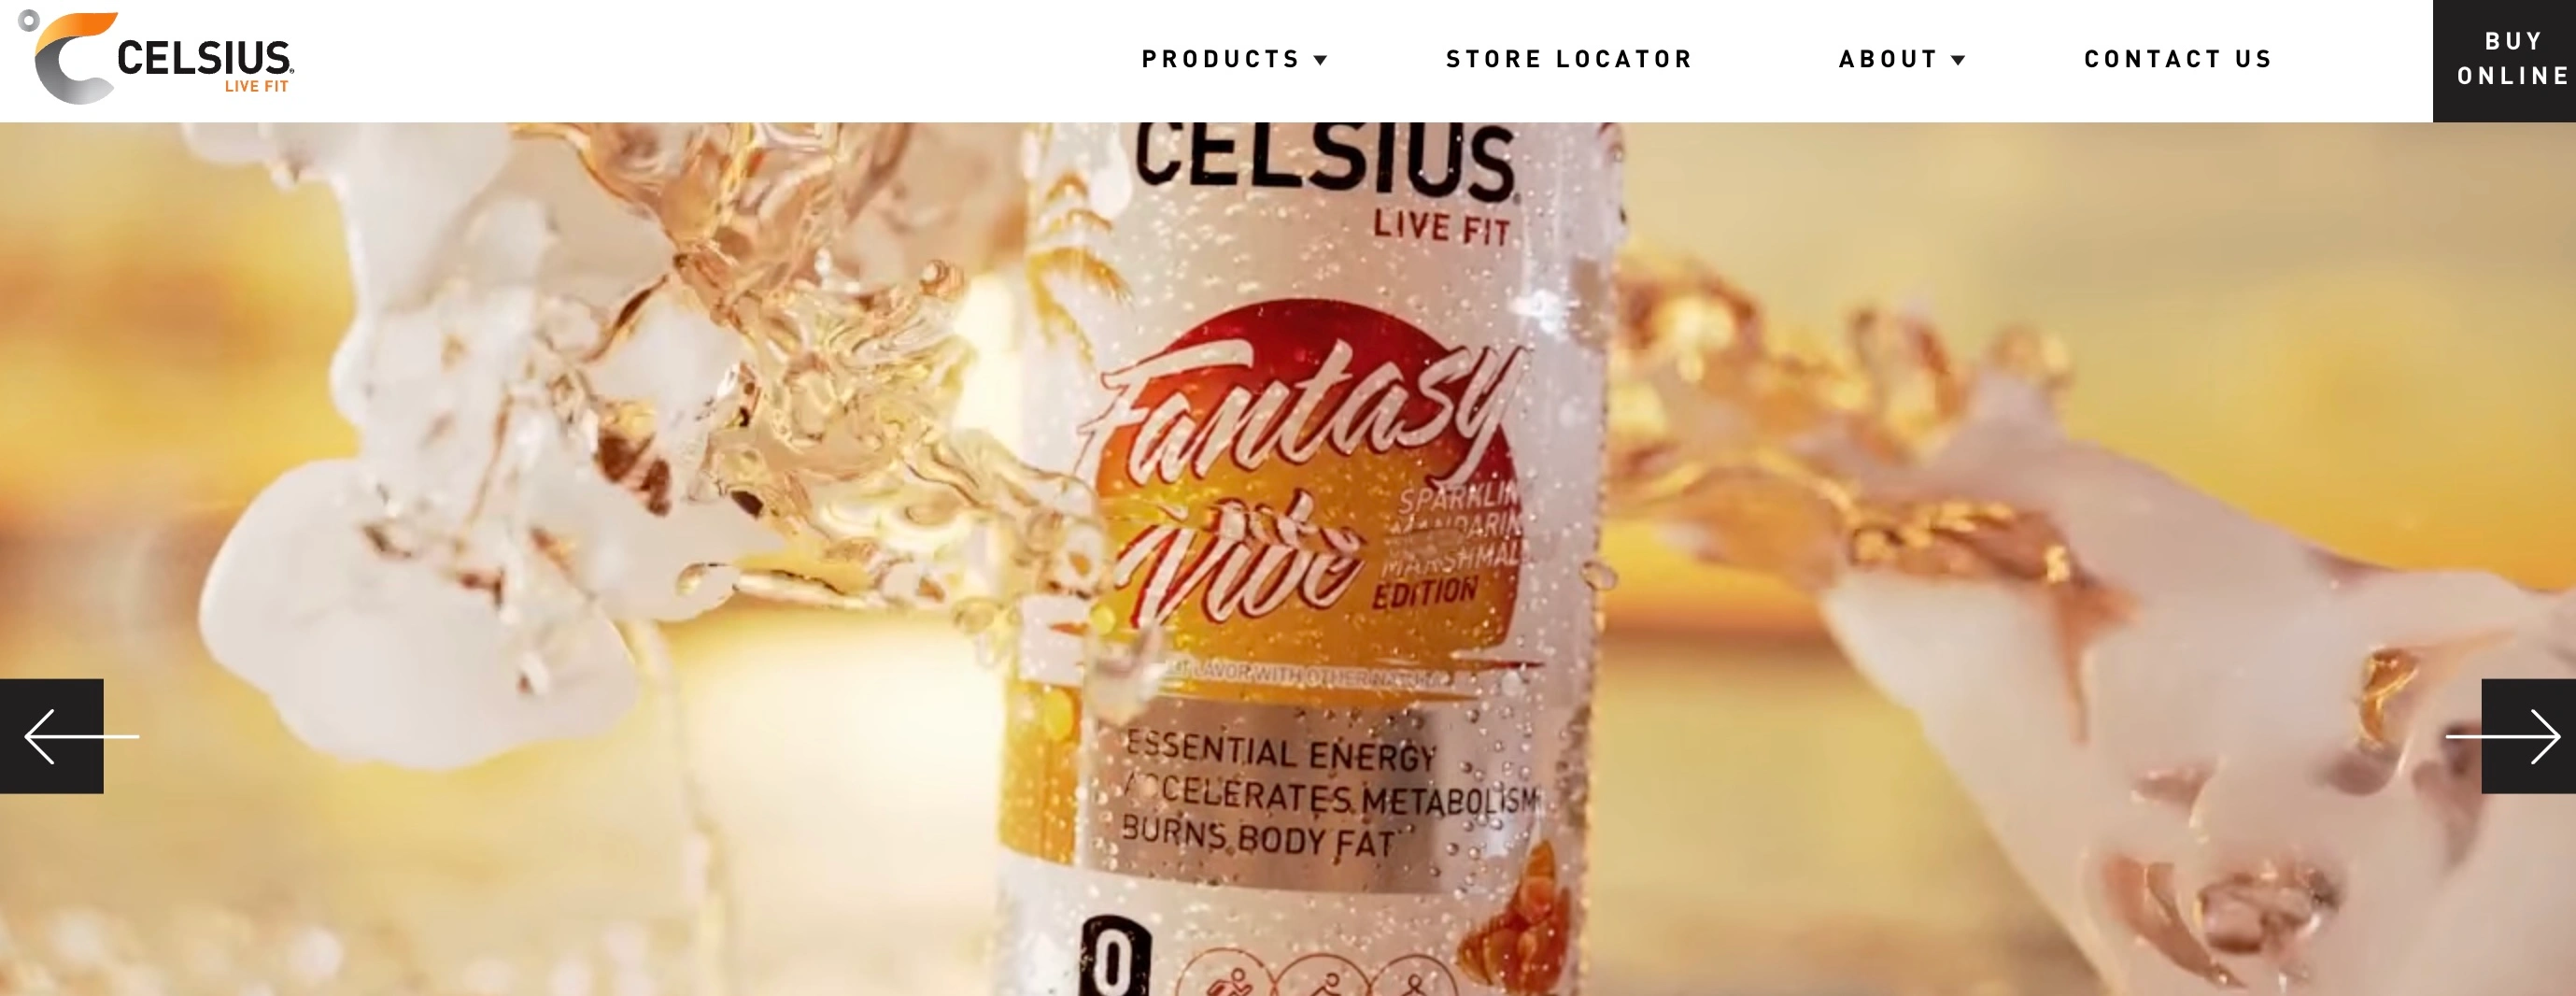 Captura de tela da página inicial do site da Celsius